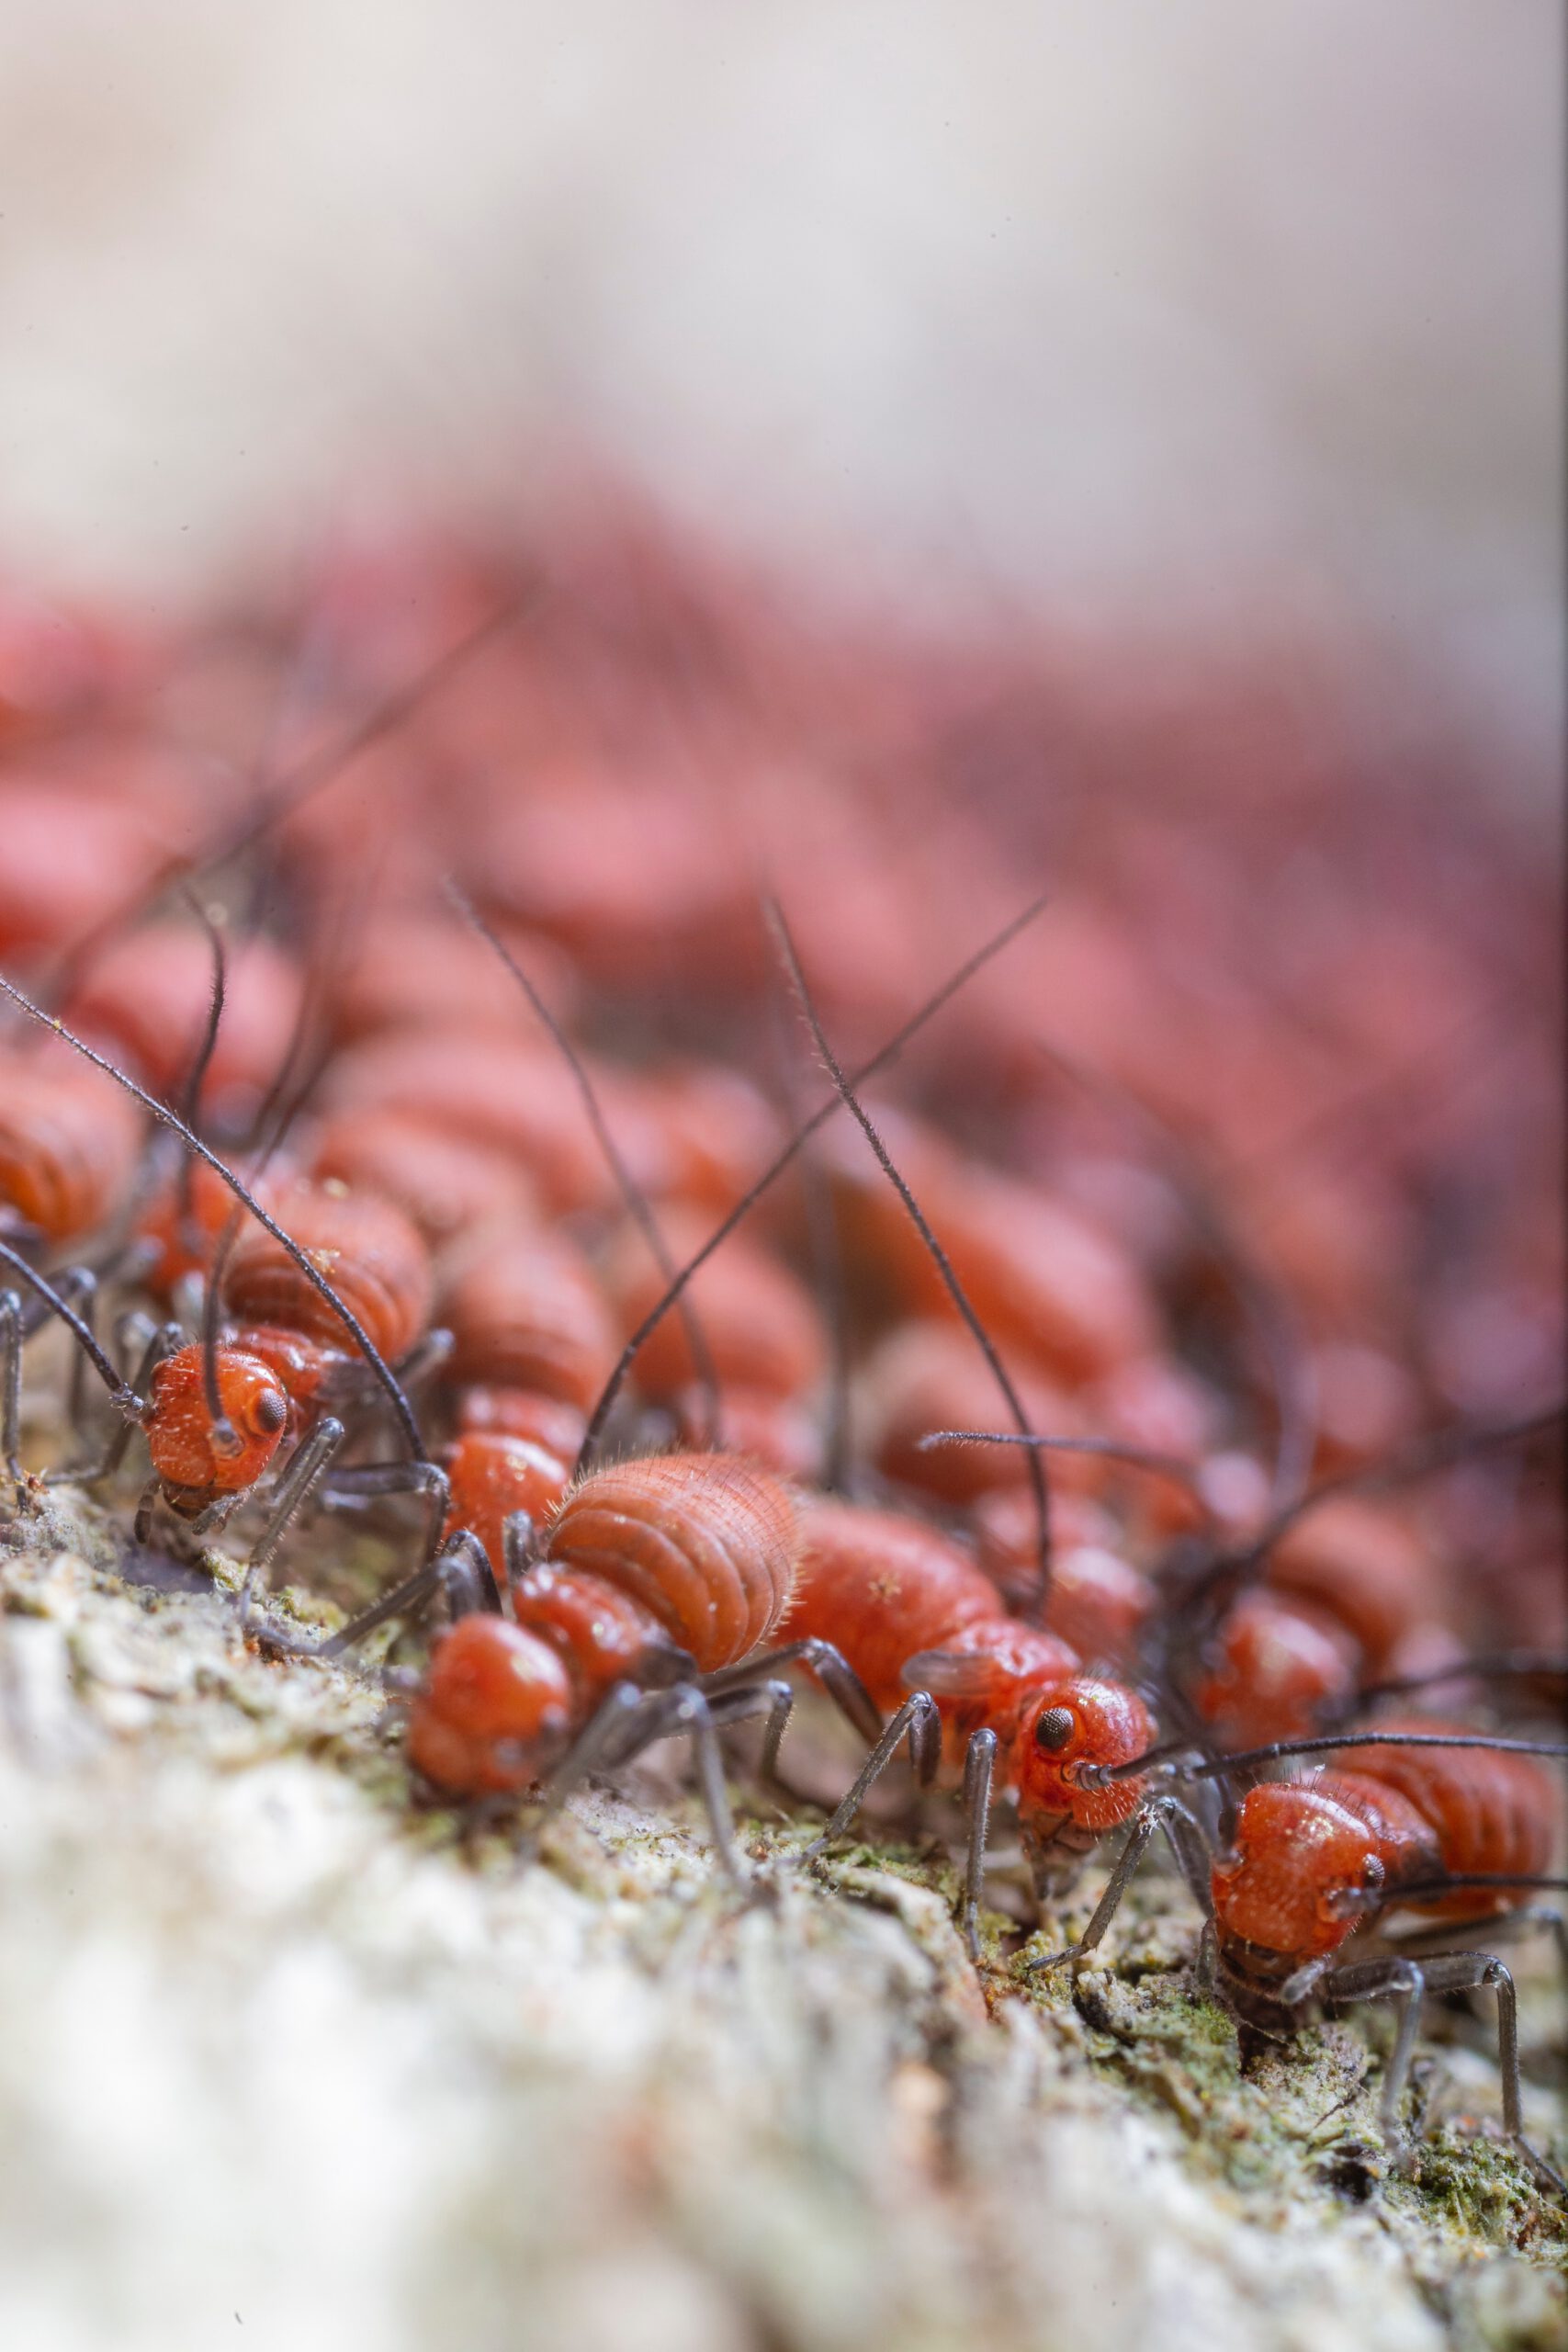 Colonie de termites rouges